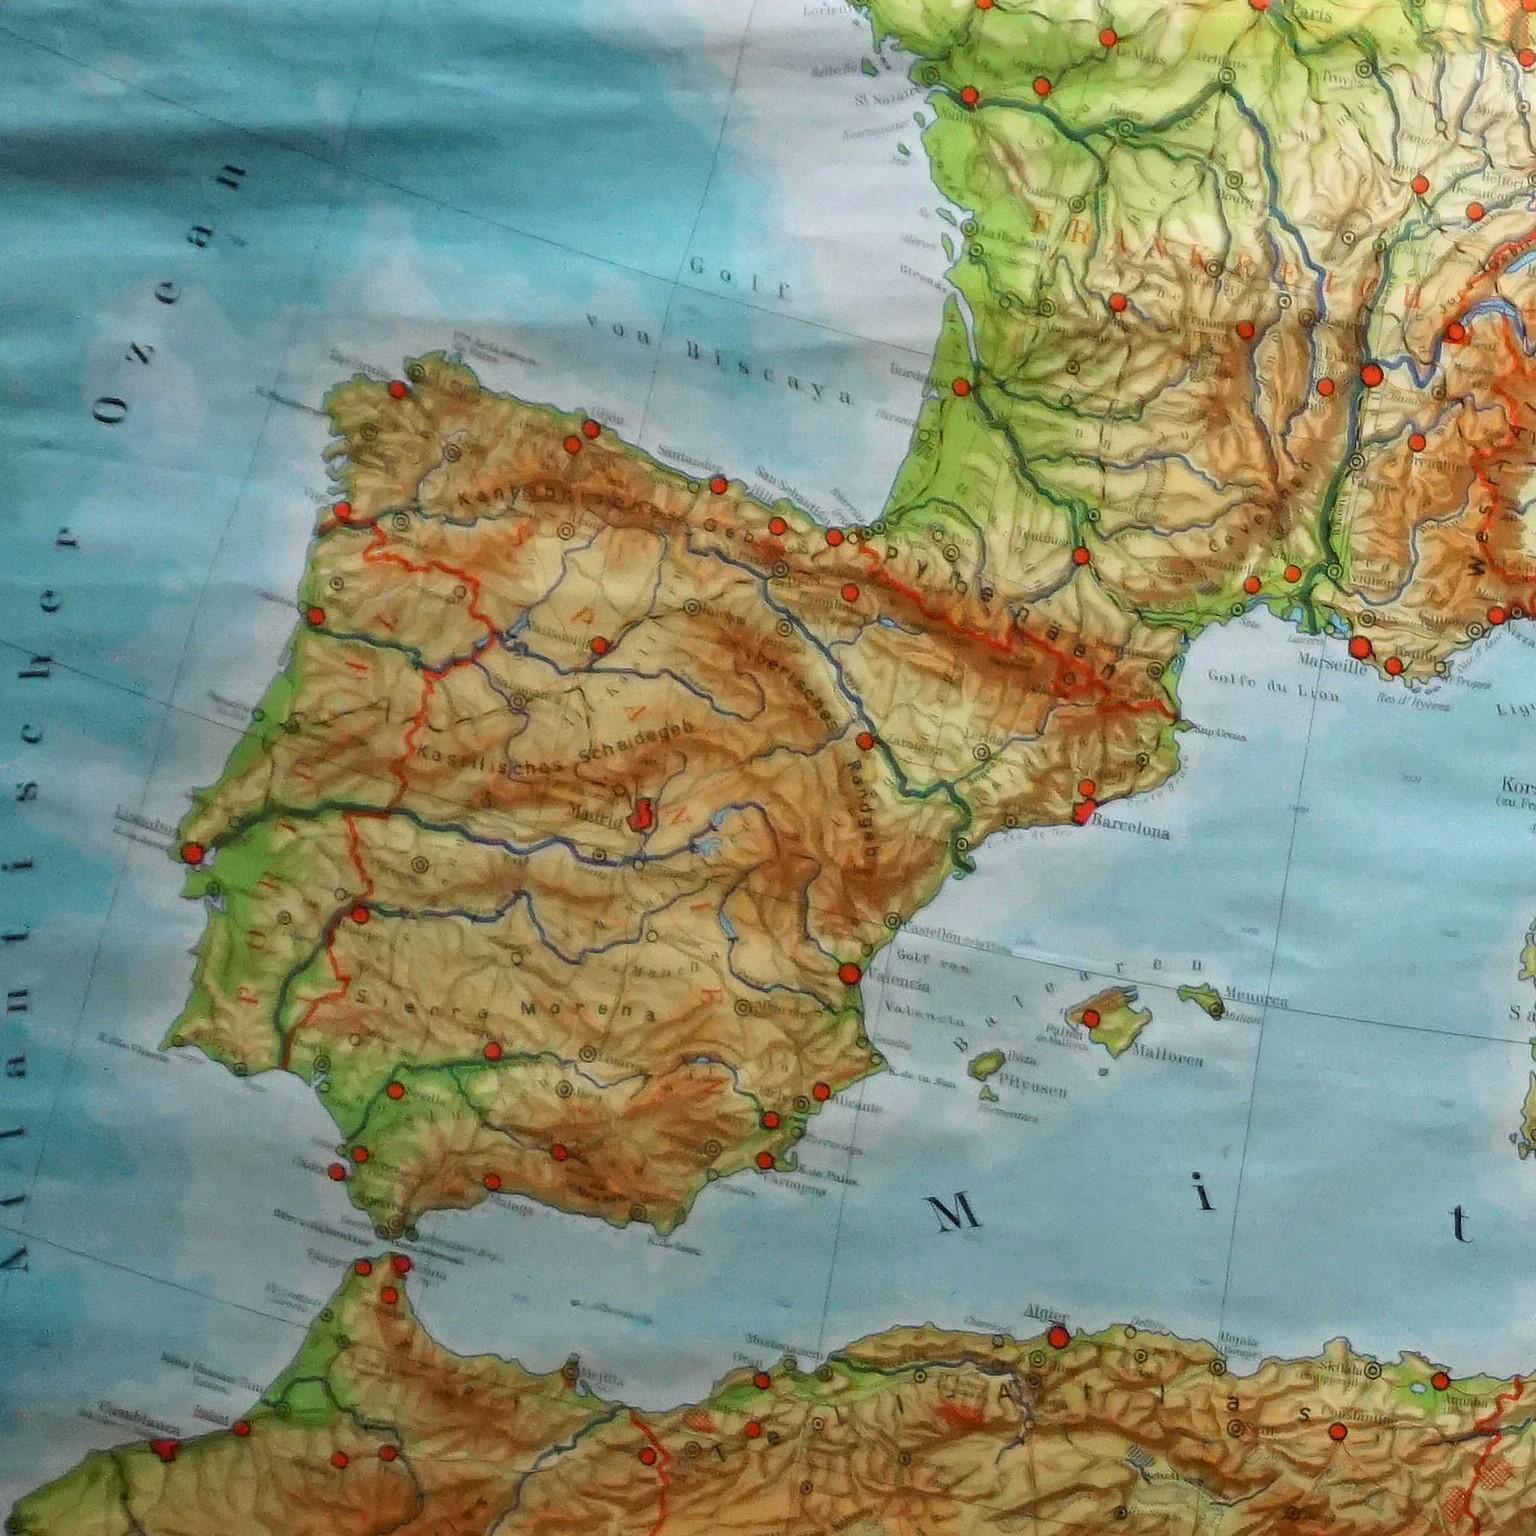 Eine große Länderkarte mit den Ländern rund um das Mittelmeer, herausgegeben von Westermann. Farbenfroher Druck auf mit Leinwand verstärktem Papier.
Abmessungen:
Breite 269 cm (105,91 Zoll)
Höhe 149 cm (58,66 Zoll)

Die angegebenen Maße beziehen